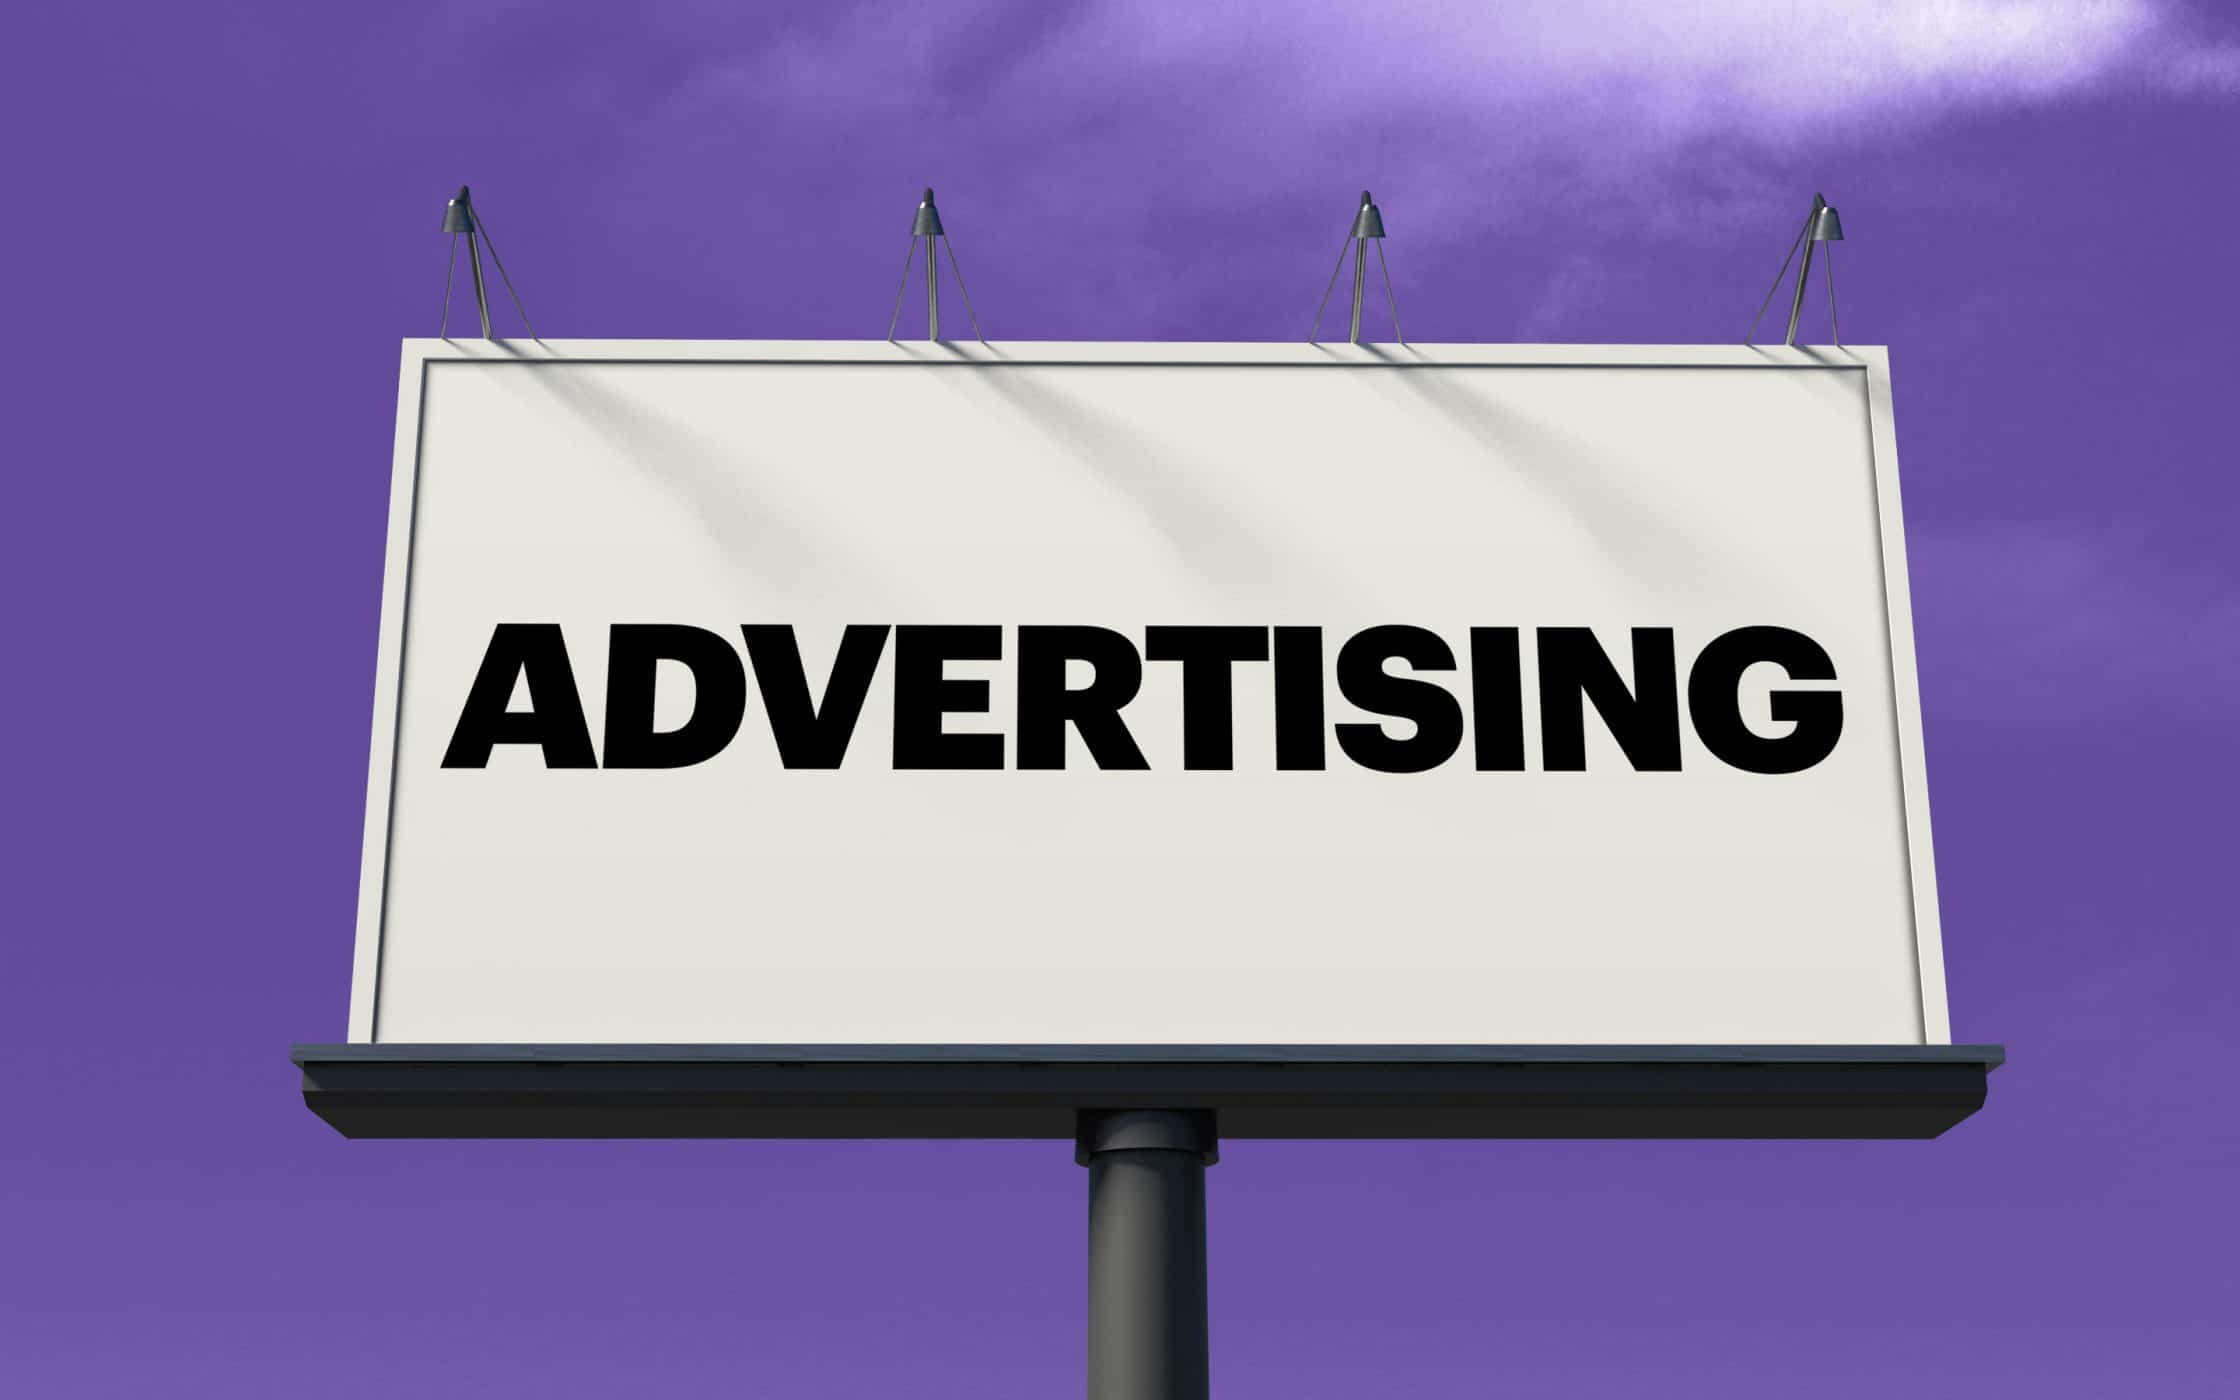 Advertising images. Реклама изображение. Advertising надпись. Реклама баннер. Реклама иллюстрация.